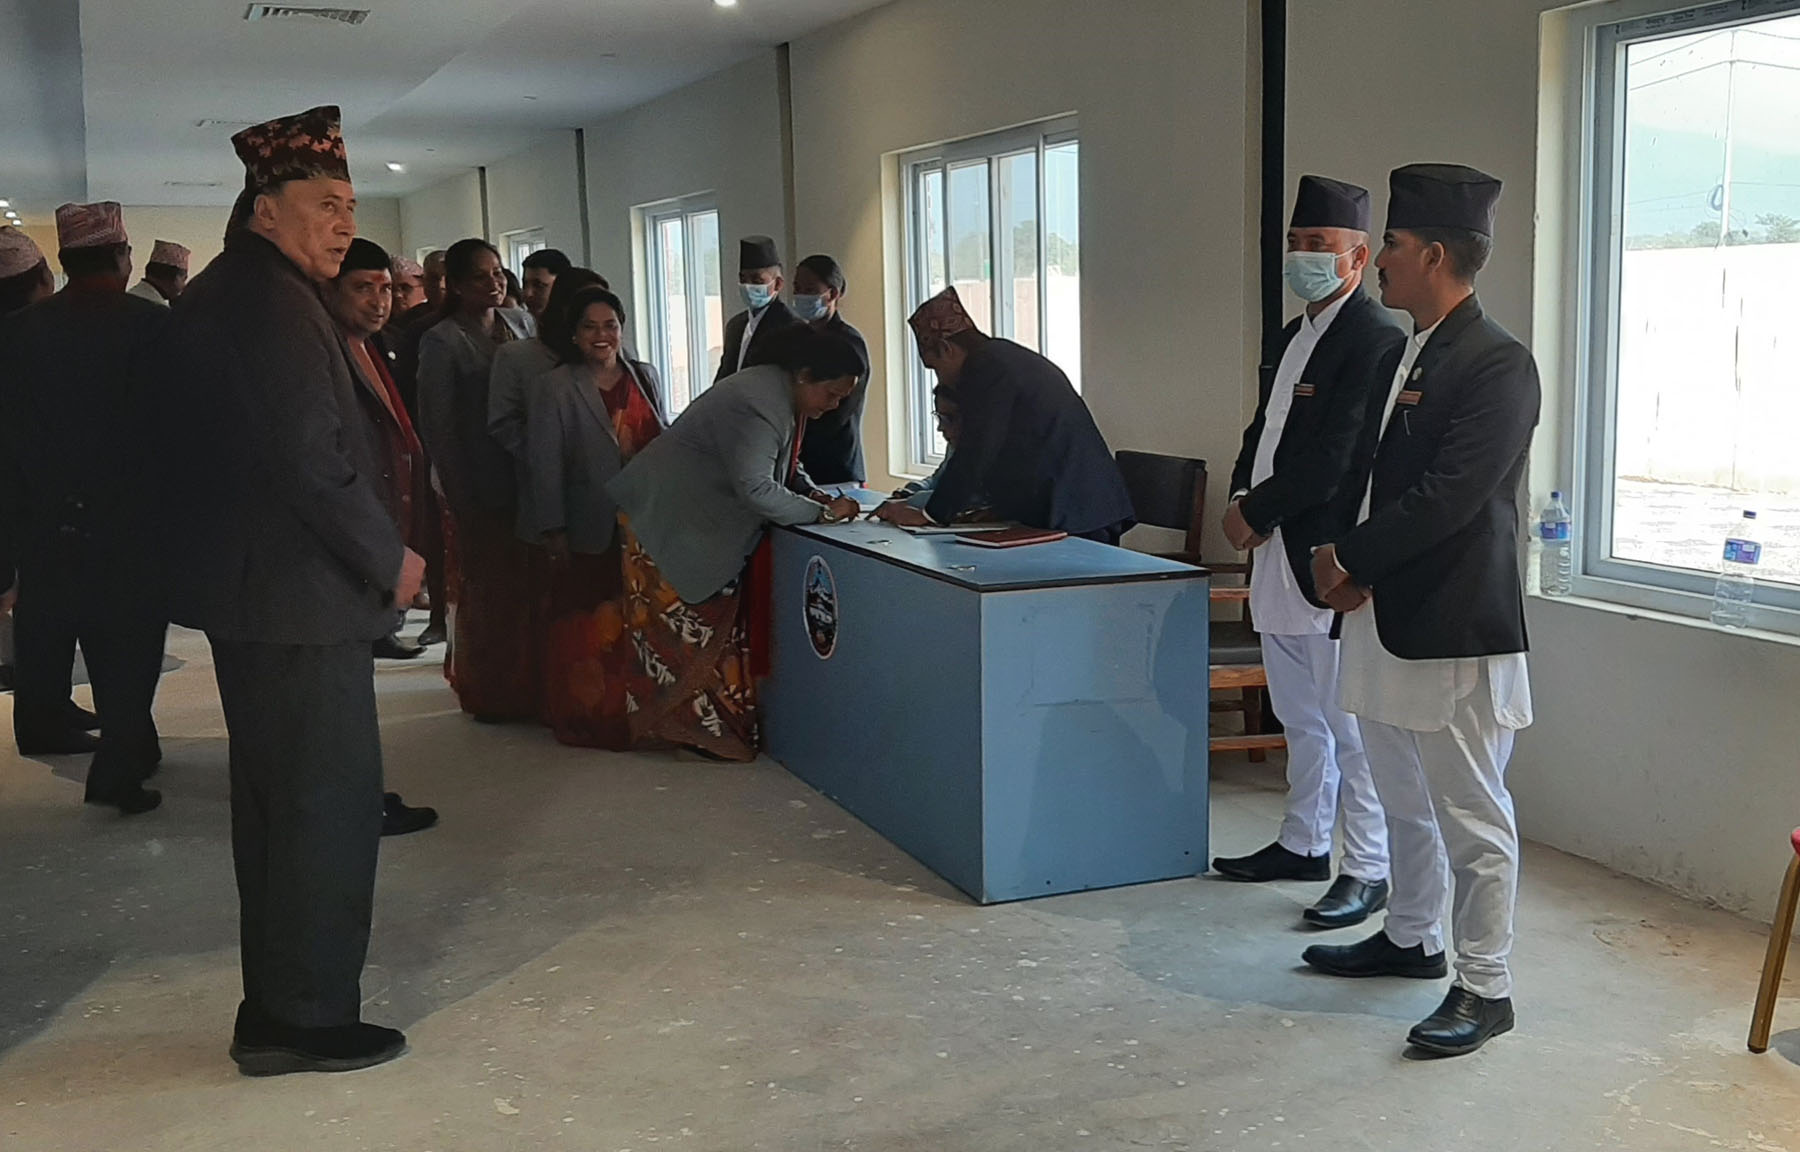 Lumbini CM Giri secures vote of confidence